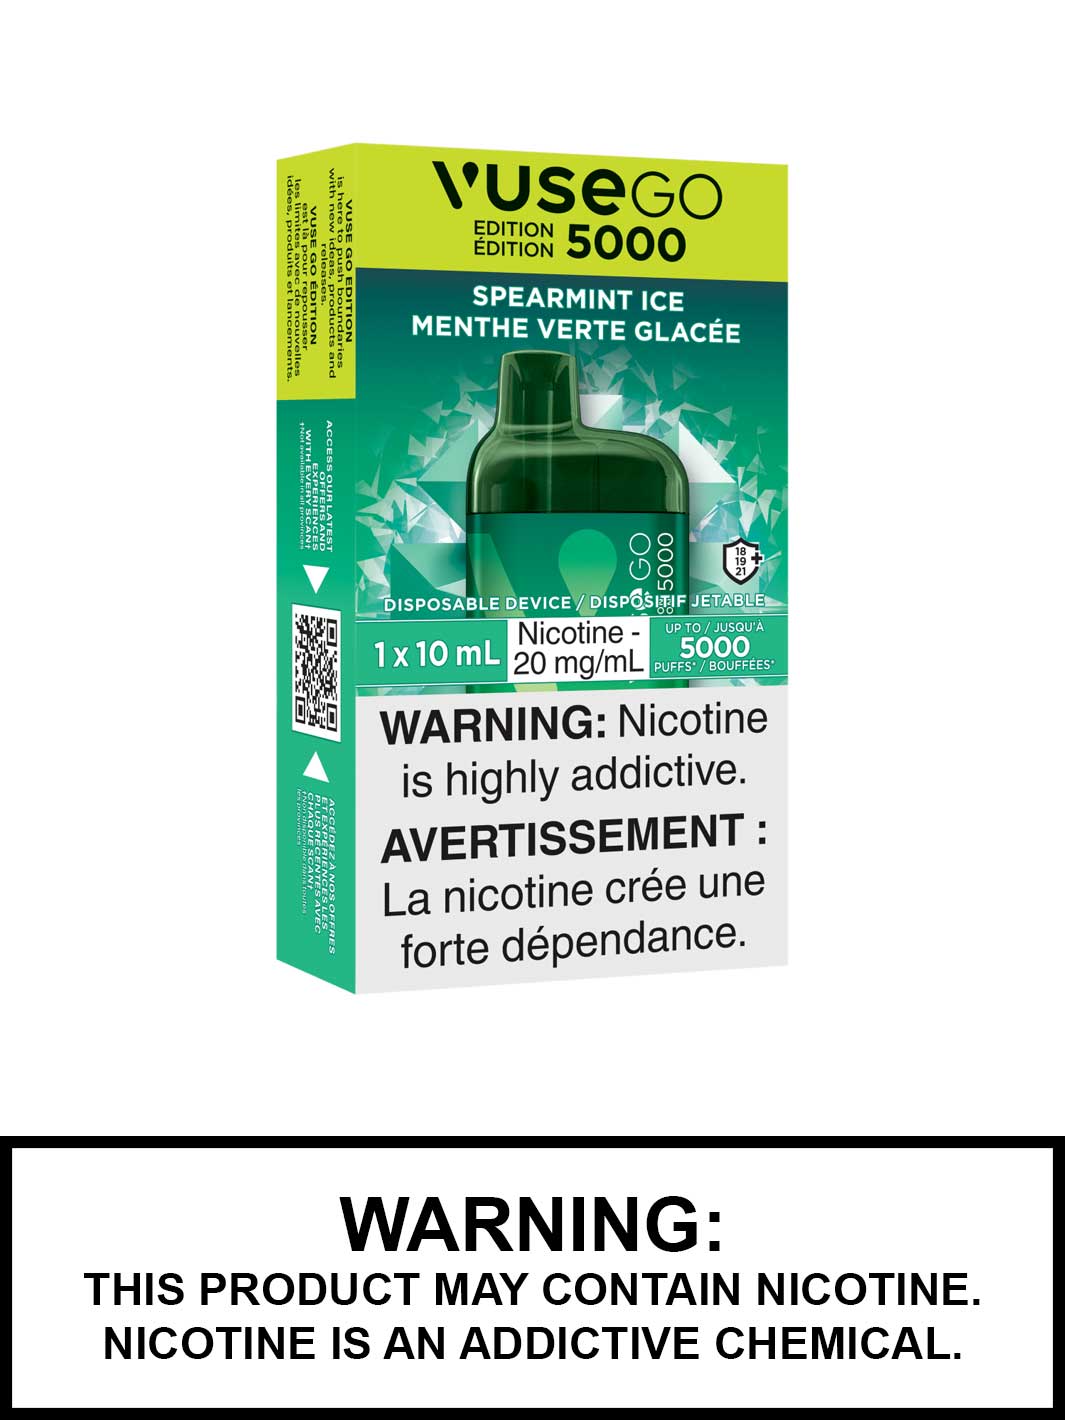 Spearmint Ice Vuse Go 5000 Edition, Vuse Go Disposable Vape Canada, Vape360